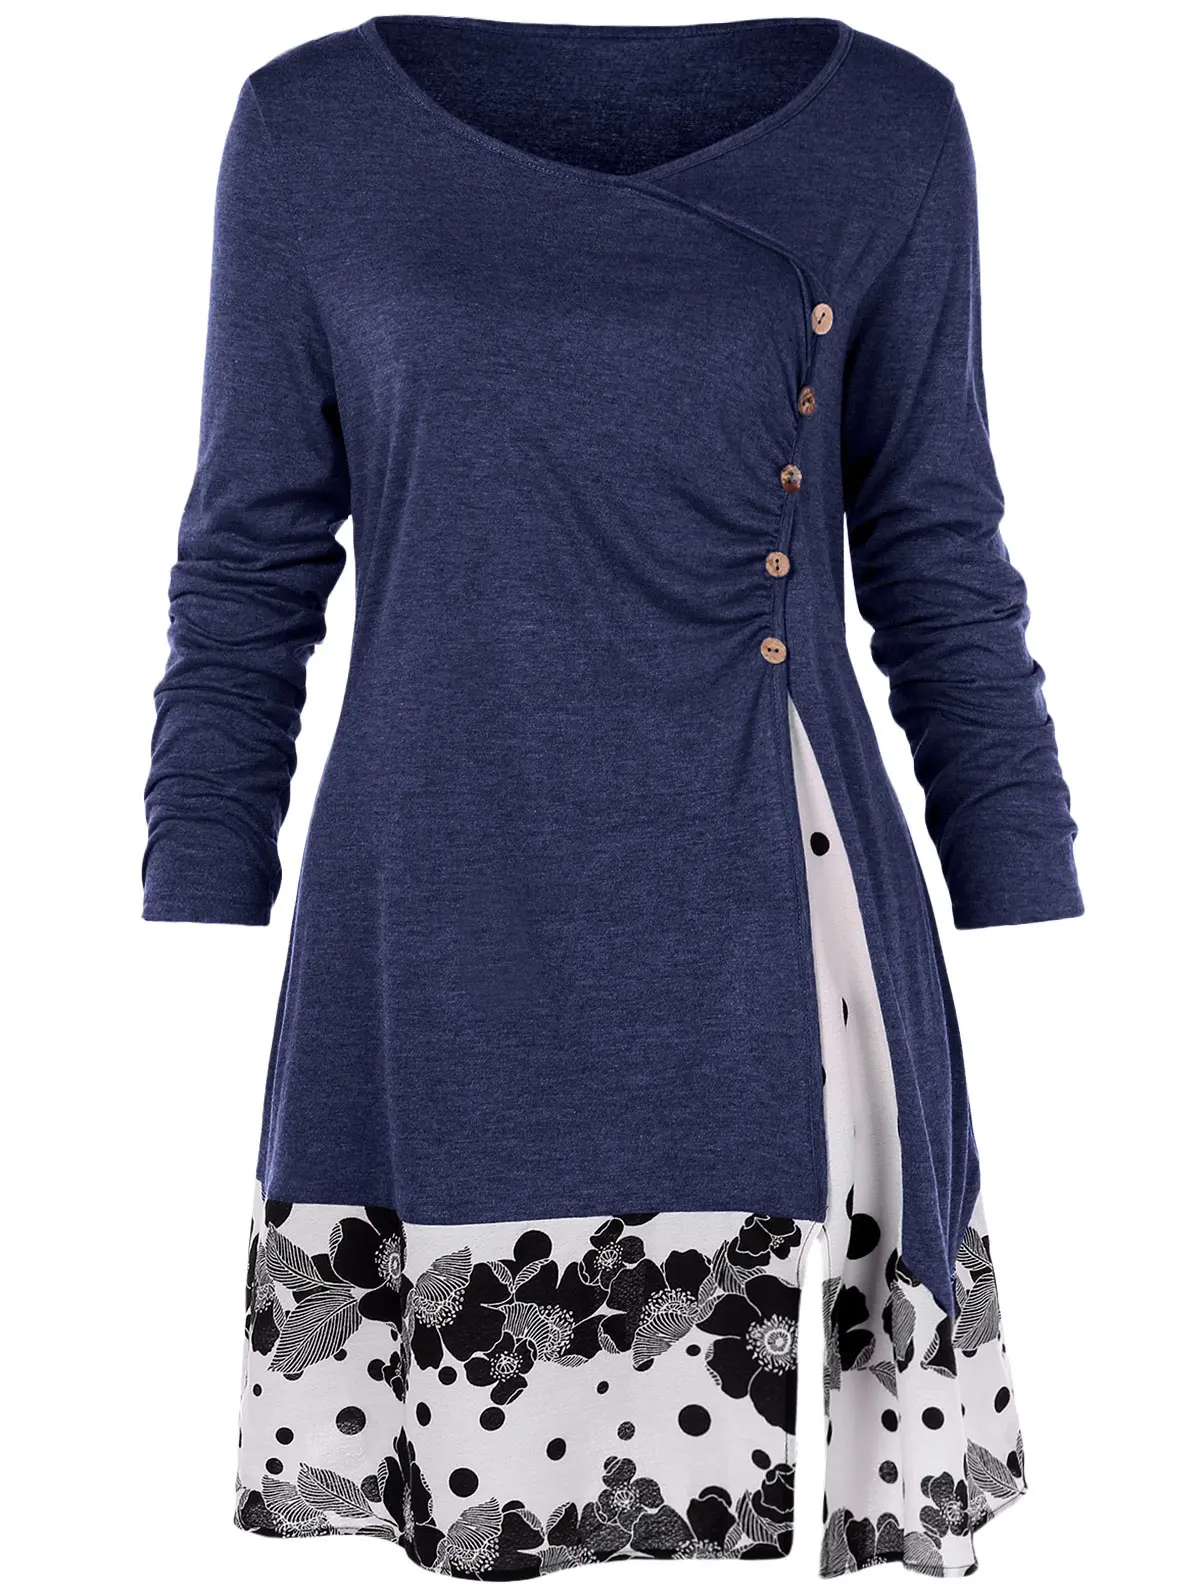 Wipalo размера плюс, на пуговицах, украшенная драпировкой, Цветочная туника, футболка с круглым вырезом и длинным рукавом, Повседневная Весенняя Осенняя женская футболка большого размера, Топ 5XL - Цвет: Deep Blue